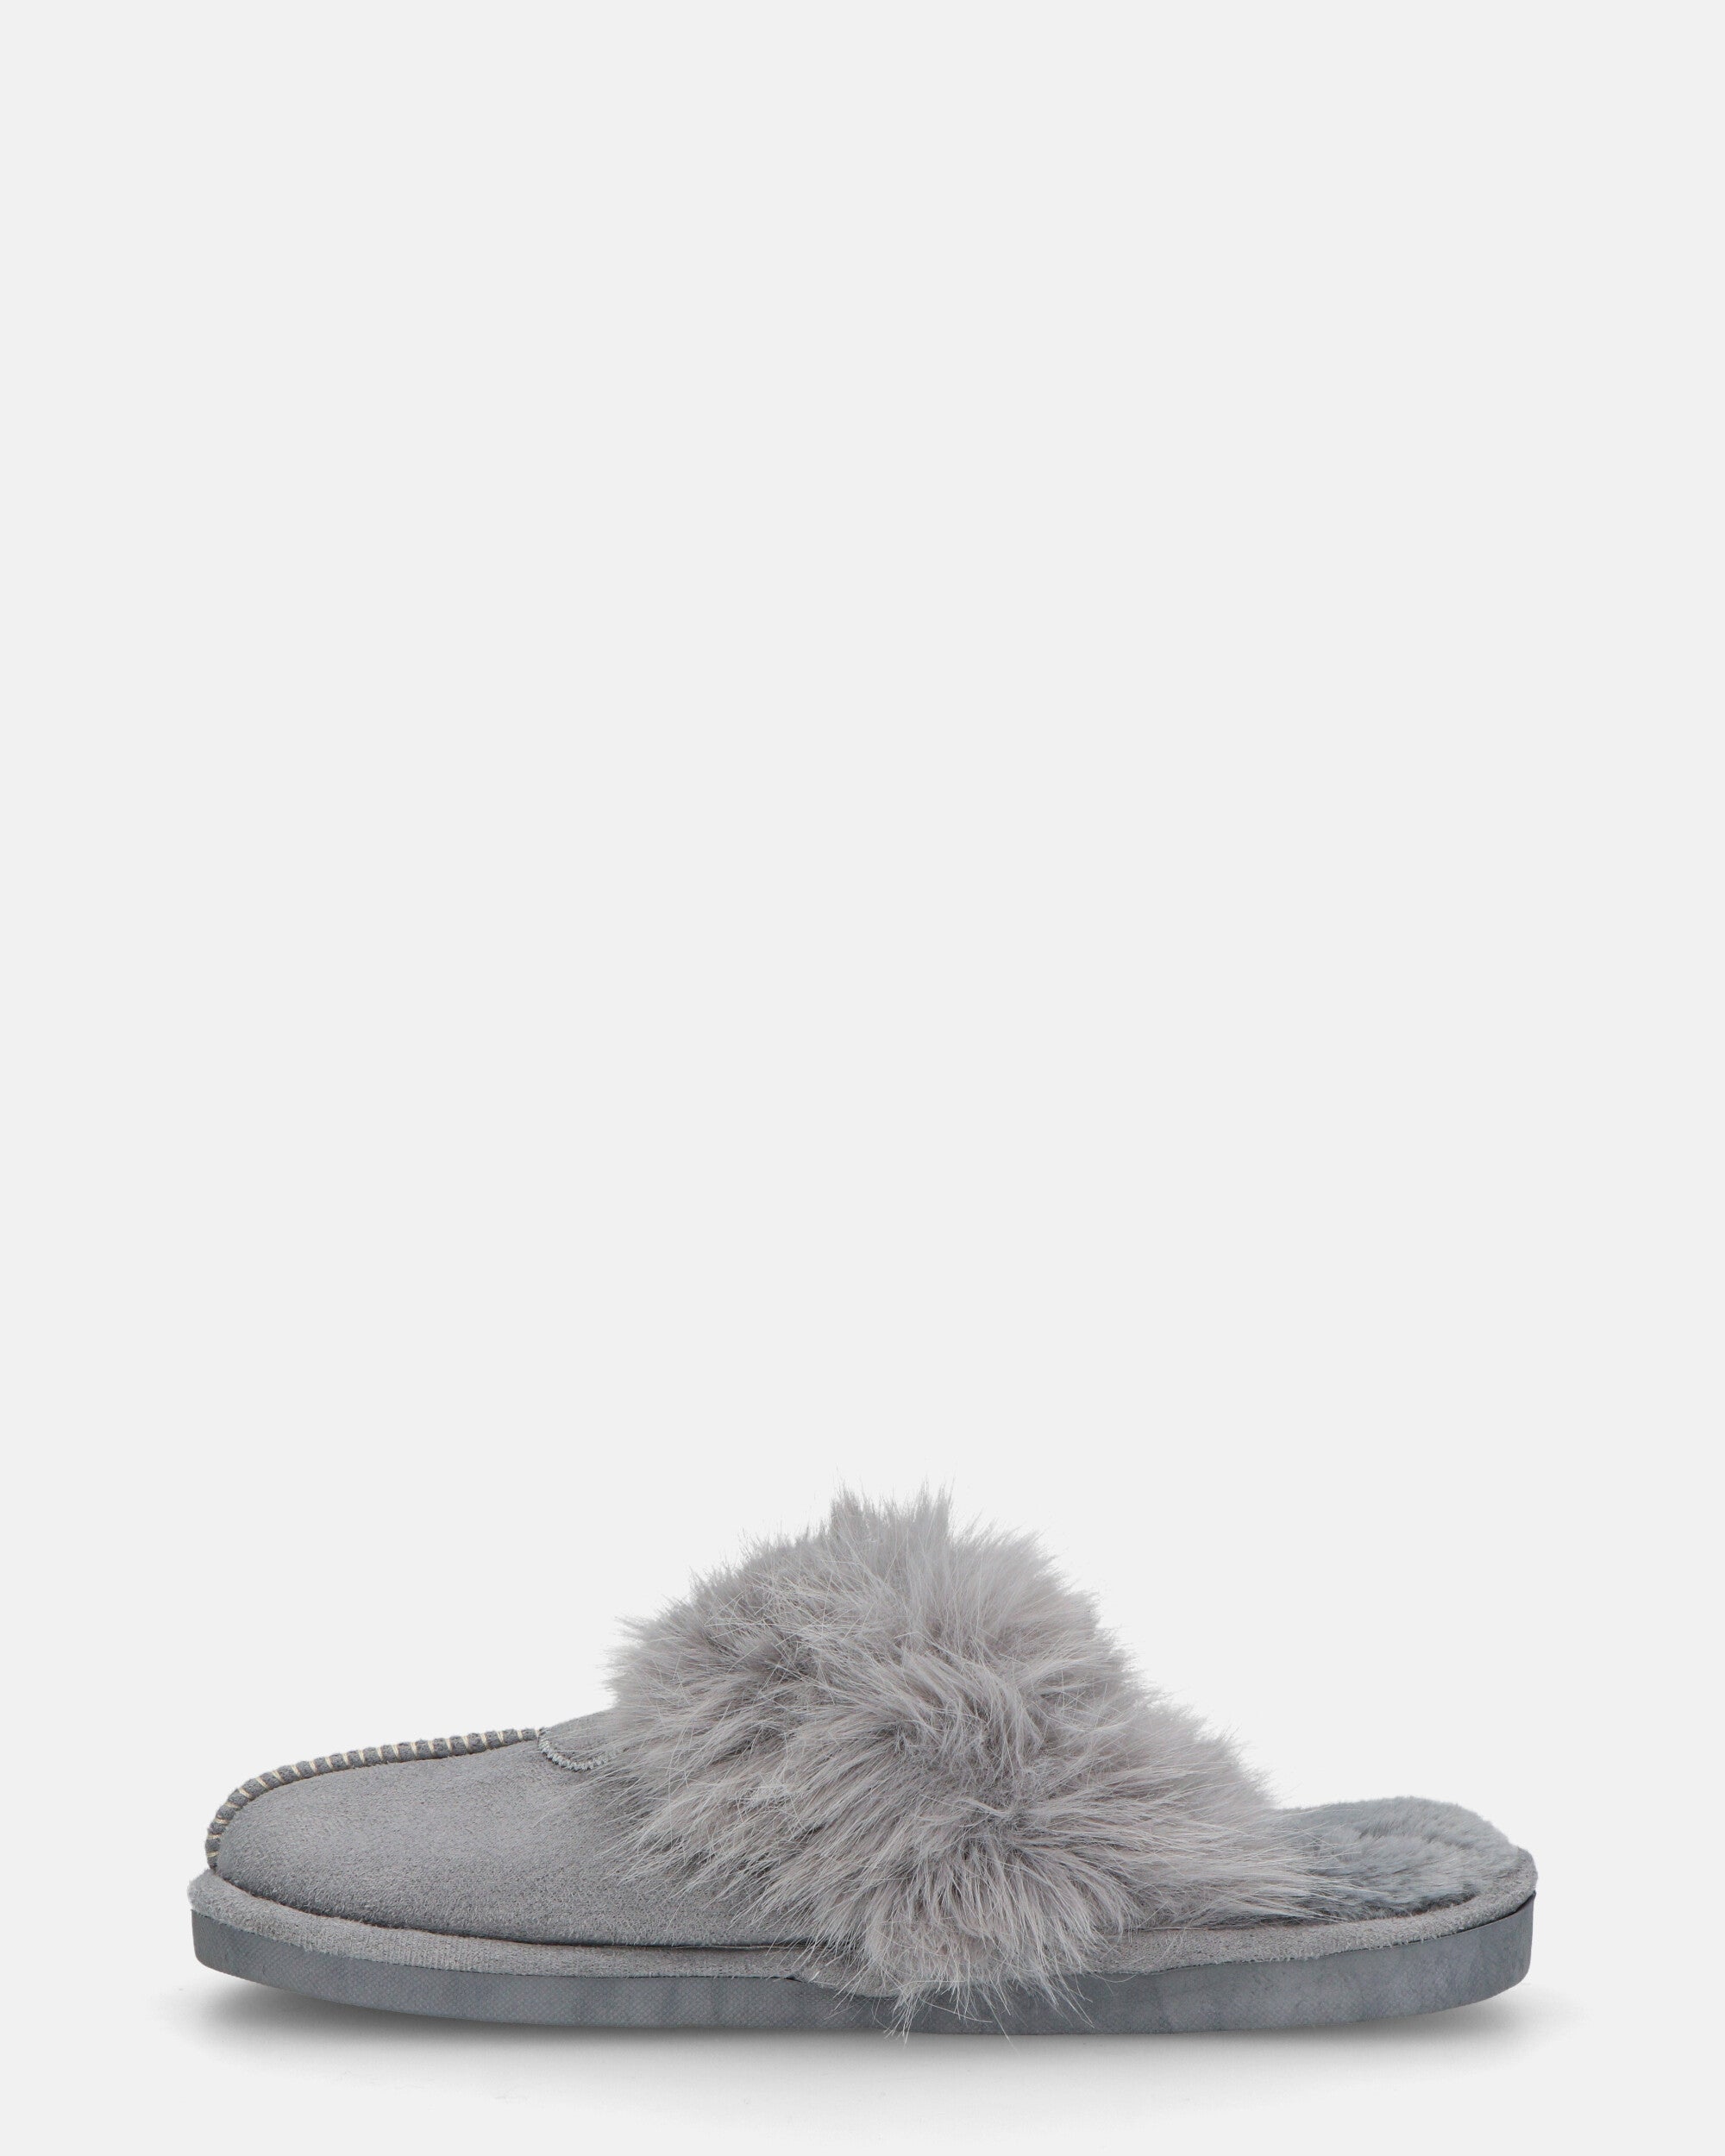 MIDORI - pantofole grigie con pelliccia e camoscio